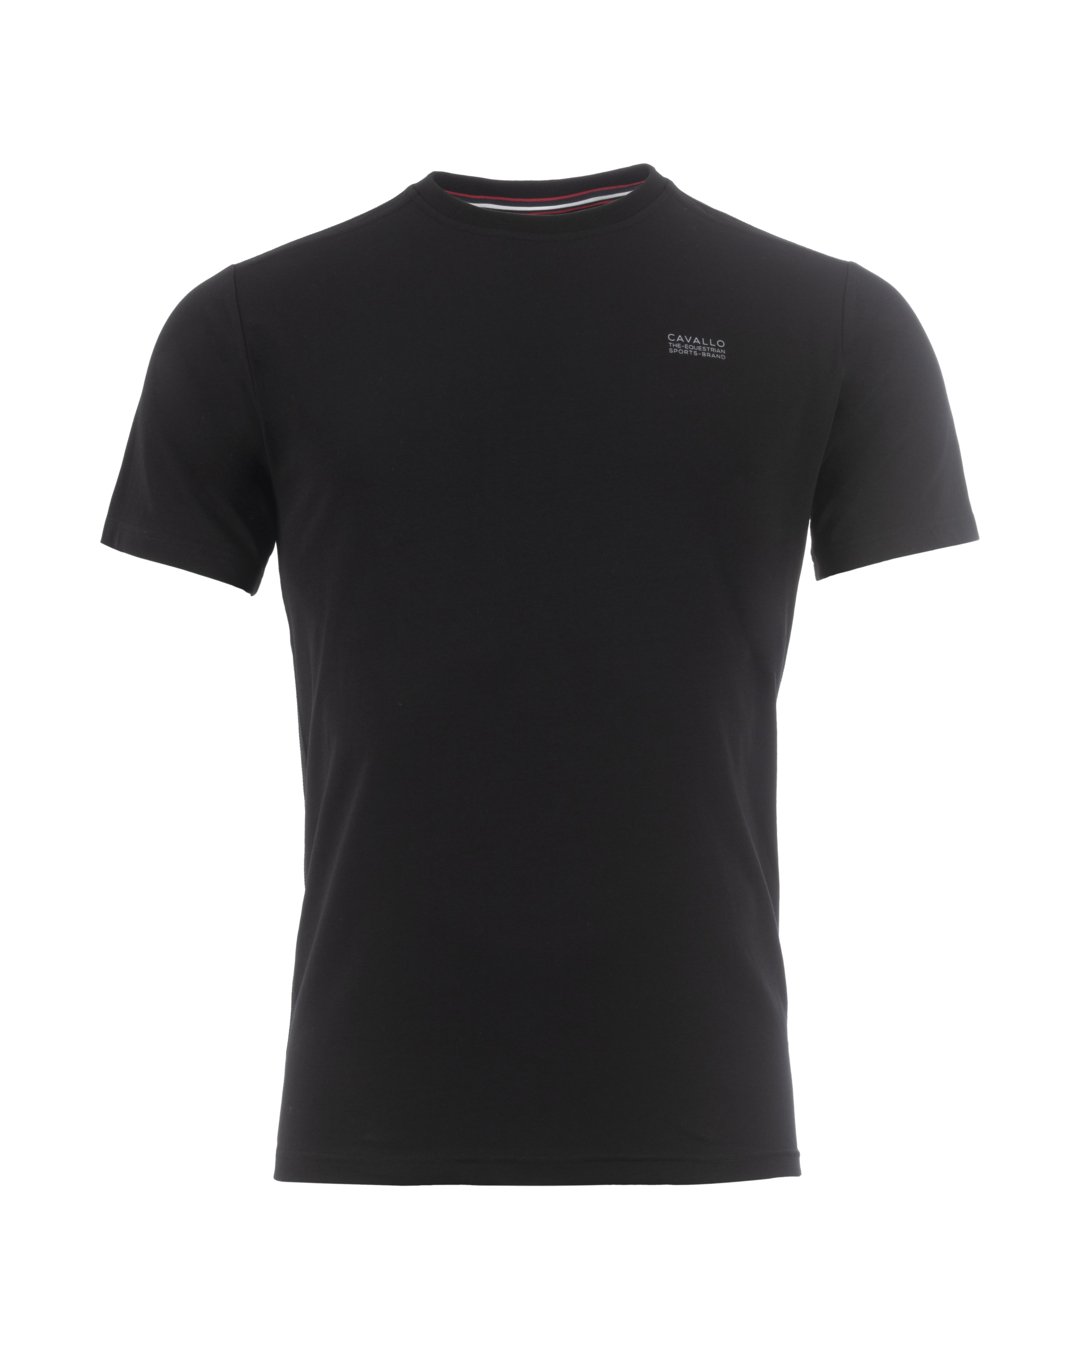 T-Shirt CavalCotton R-Neck Schwarz 46